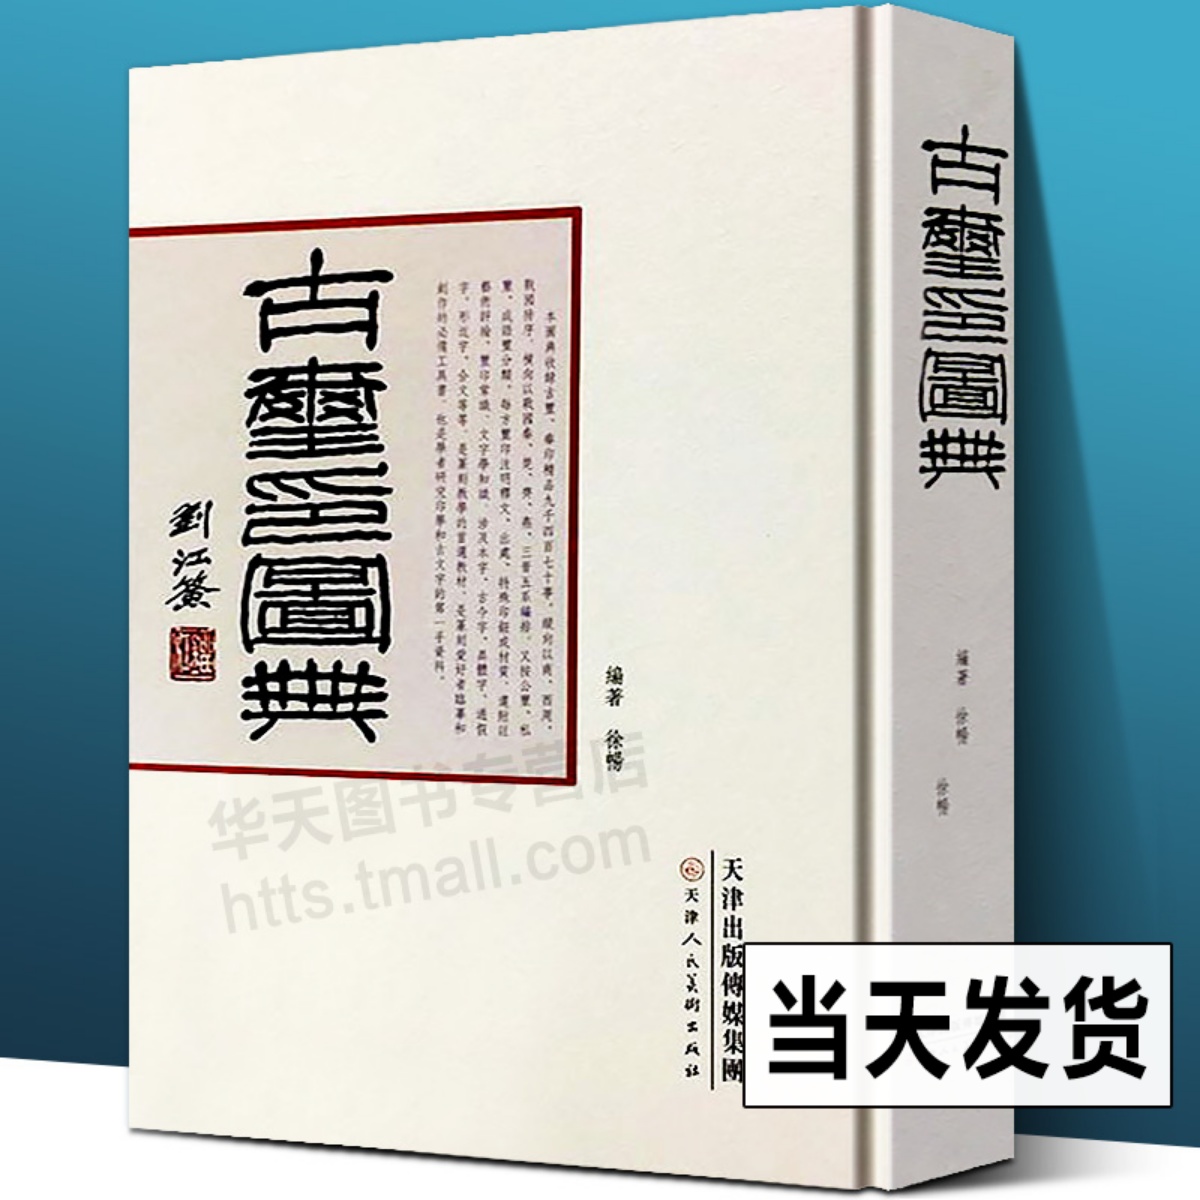 正版书籍【赠函套+600页反文手册】中国篆刻名品全套装24种组合装第一二 